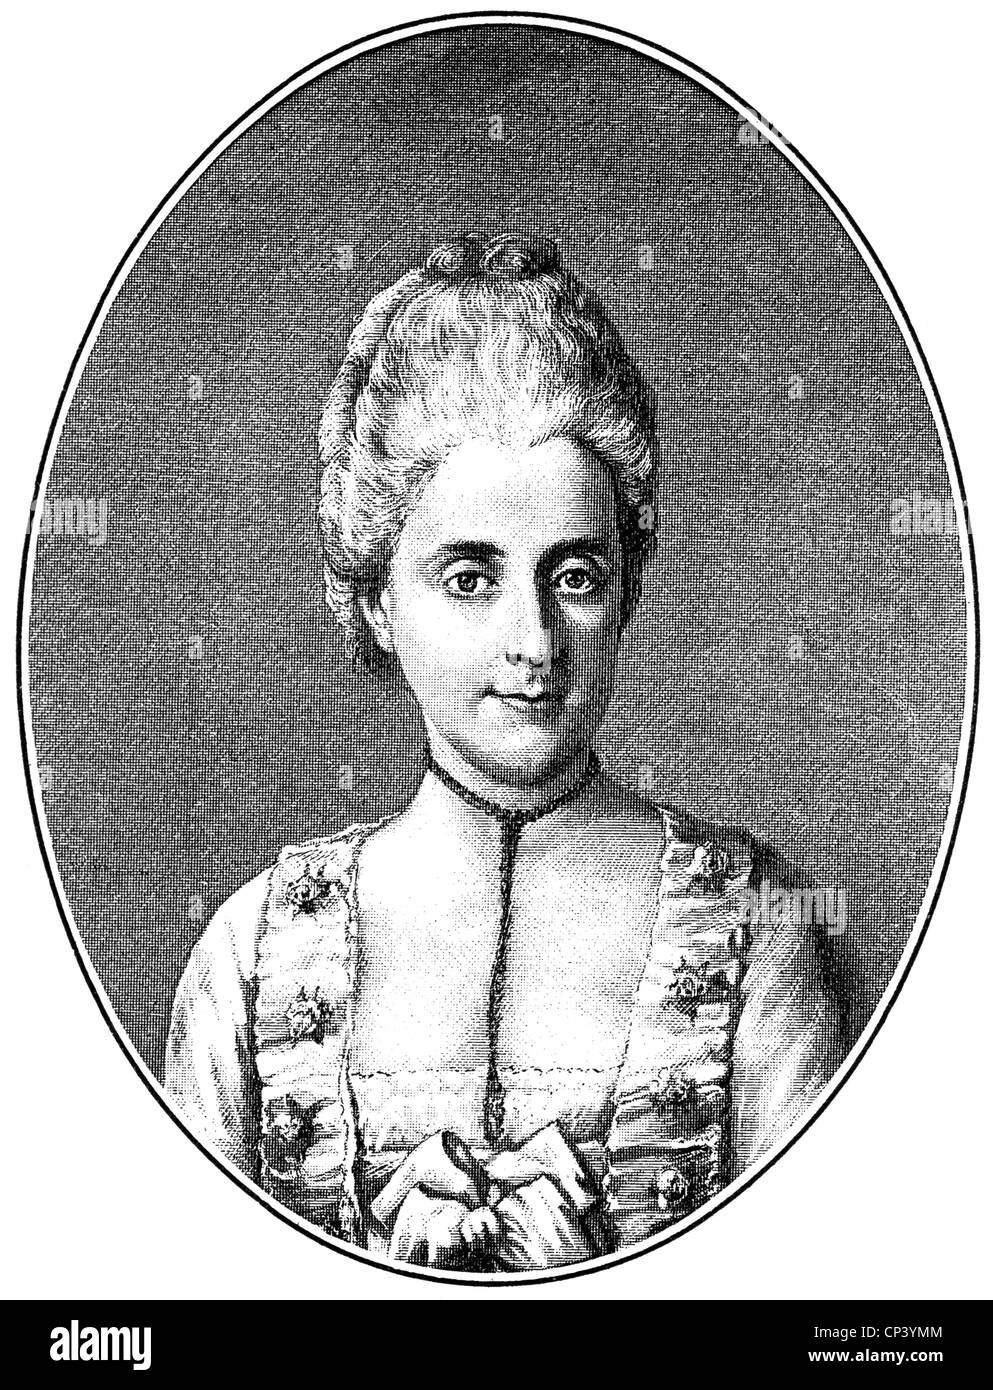 Koenig, Eva, 22.3.1736 - 10.1.1778, wife of Gotthold Ephraim Lessing, portrait, wood engraving, 19th century, Stock Photo